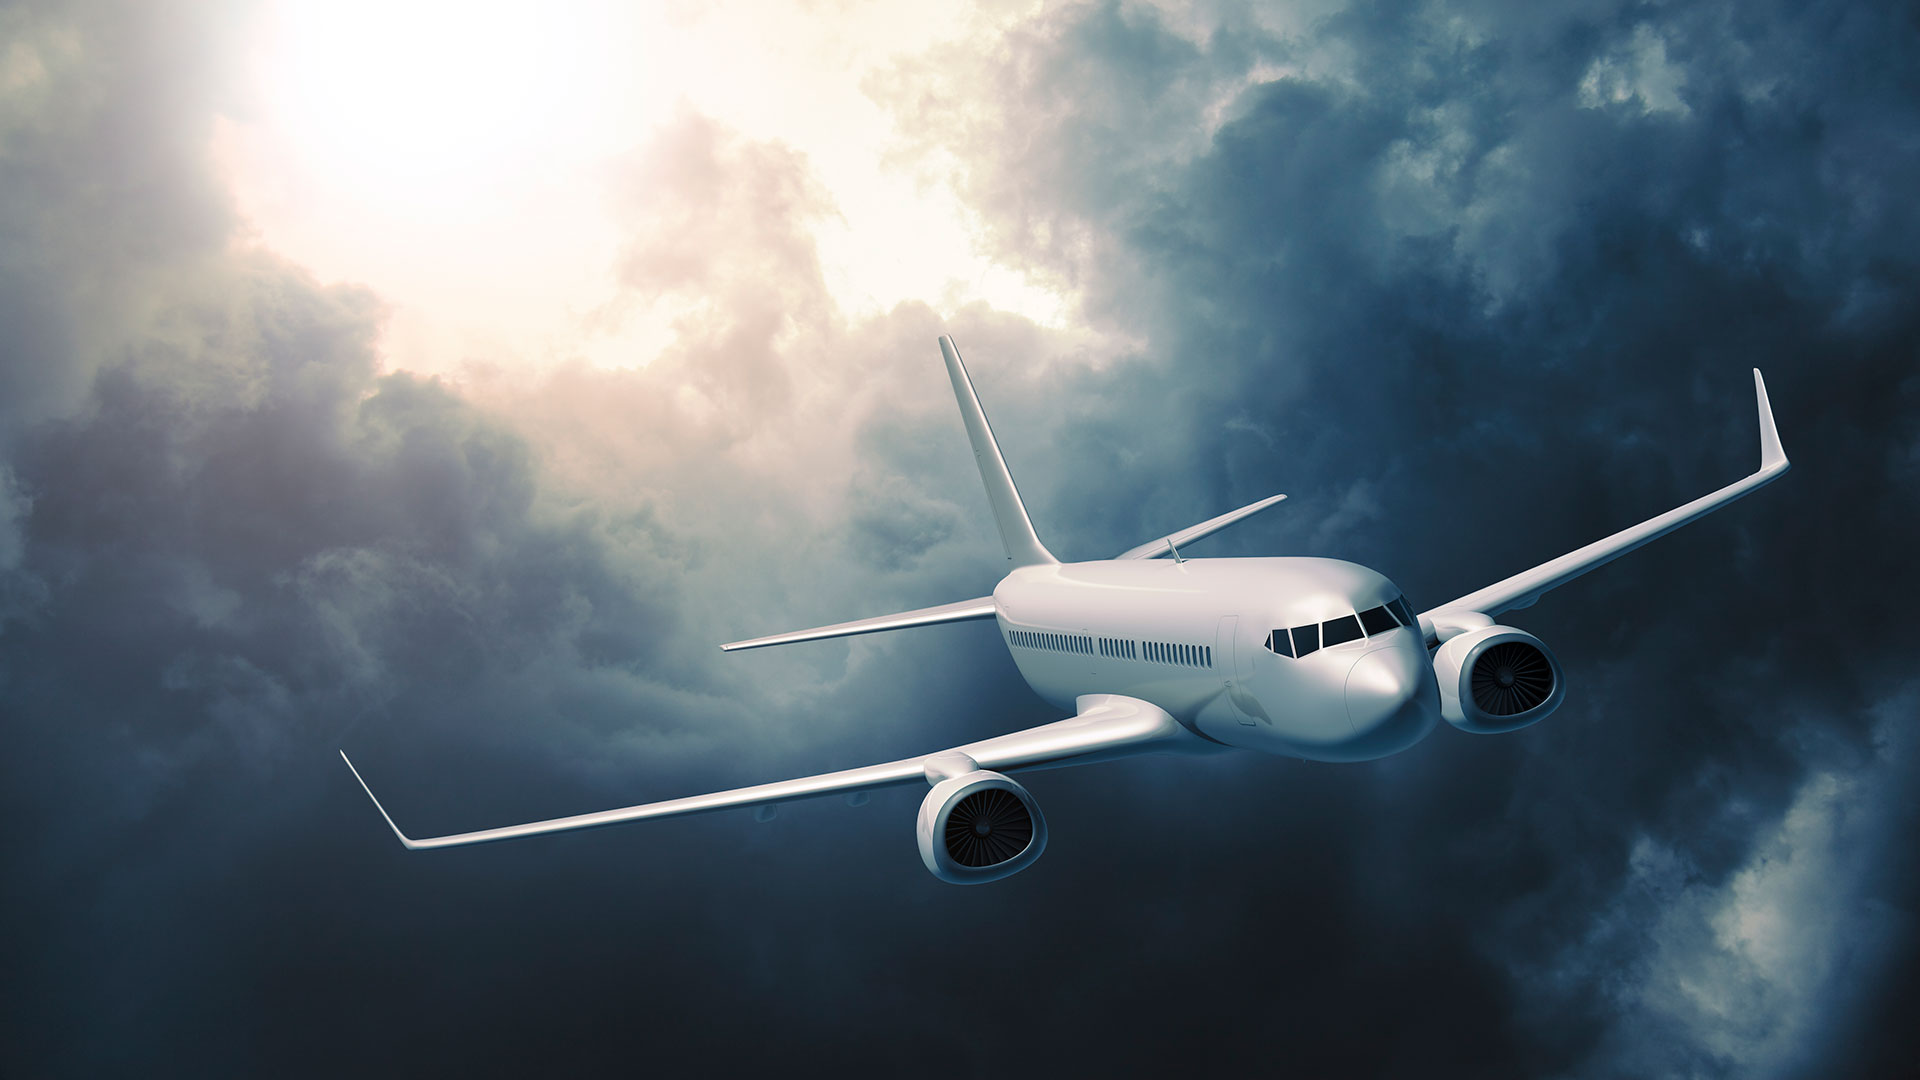 Funcionar portátil pala Turbulencias en el avión: 6 consejos para enfrentarlas sin miedo - Infobae